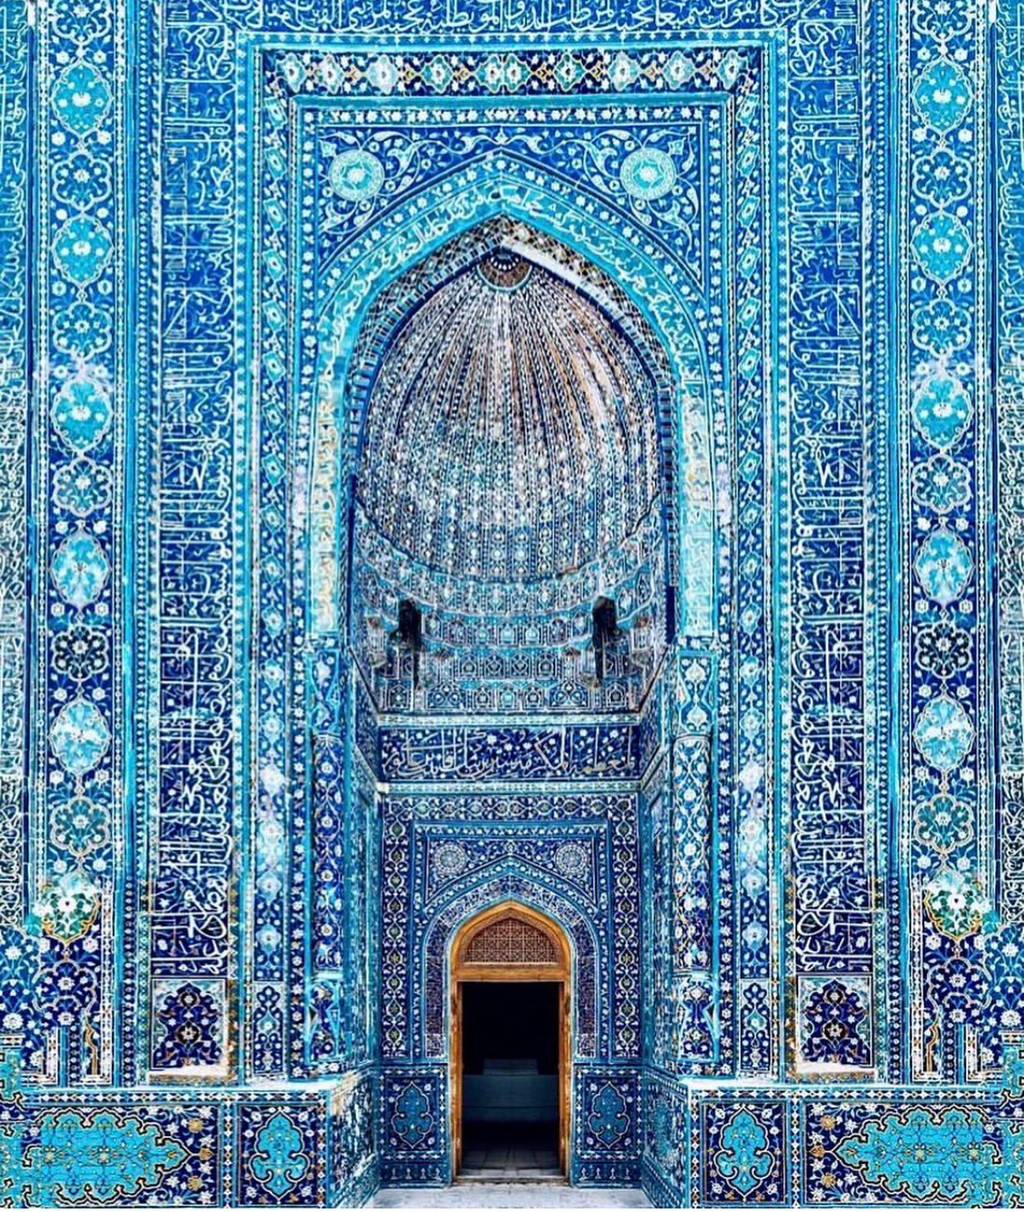 시각적화려함으로는 최고인 이슬람 건축물들 | 인스티즈